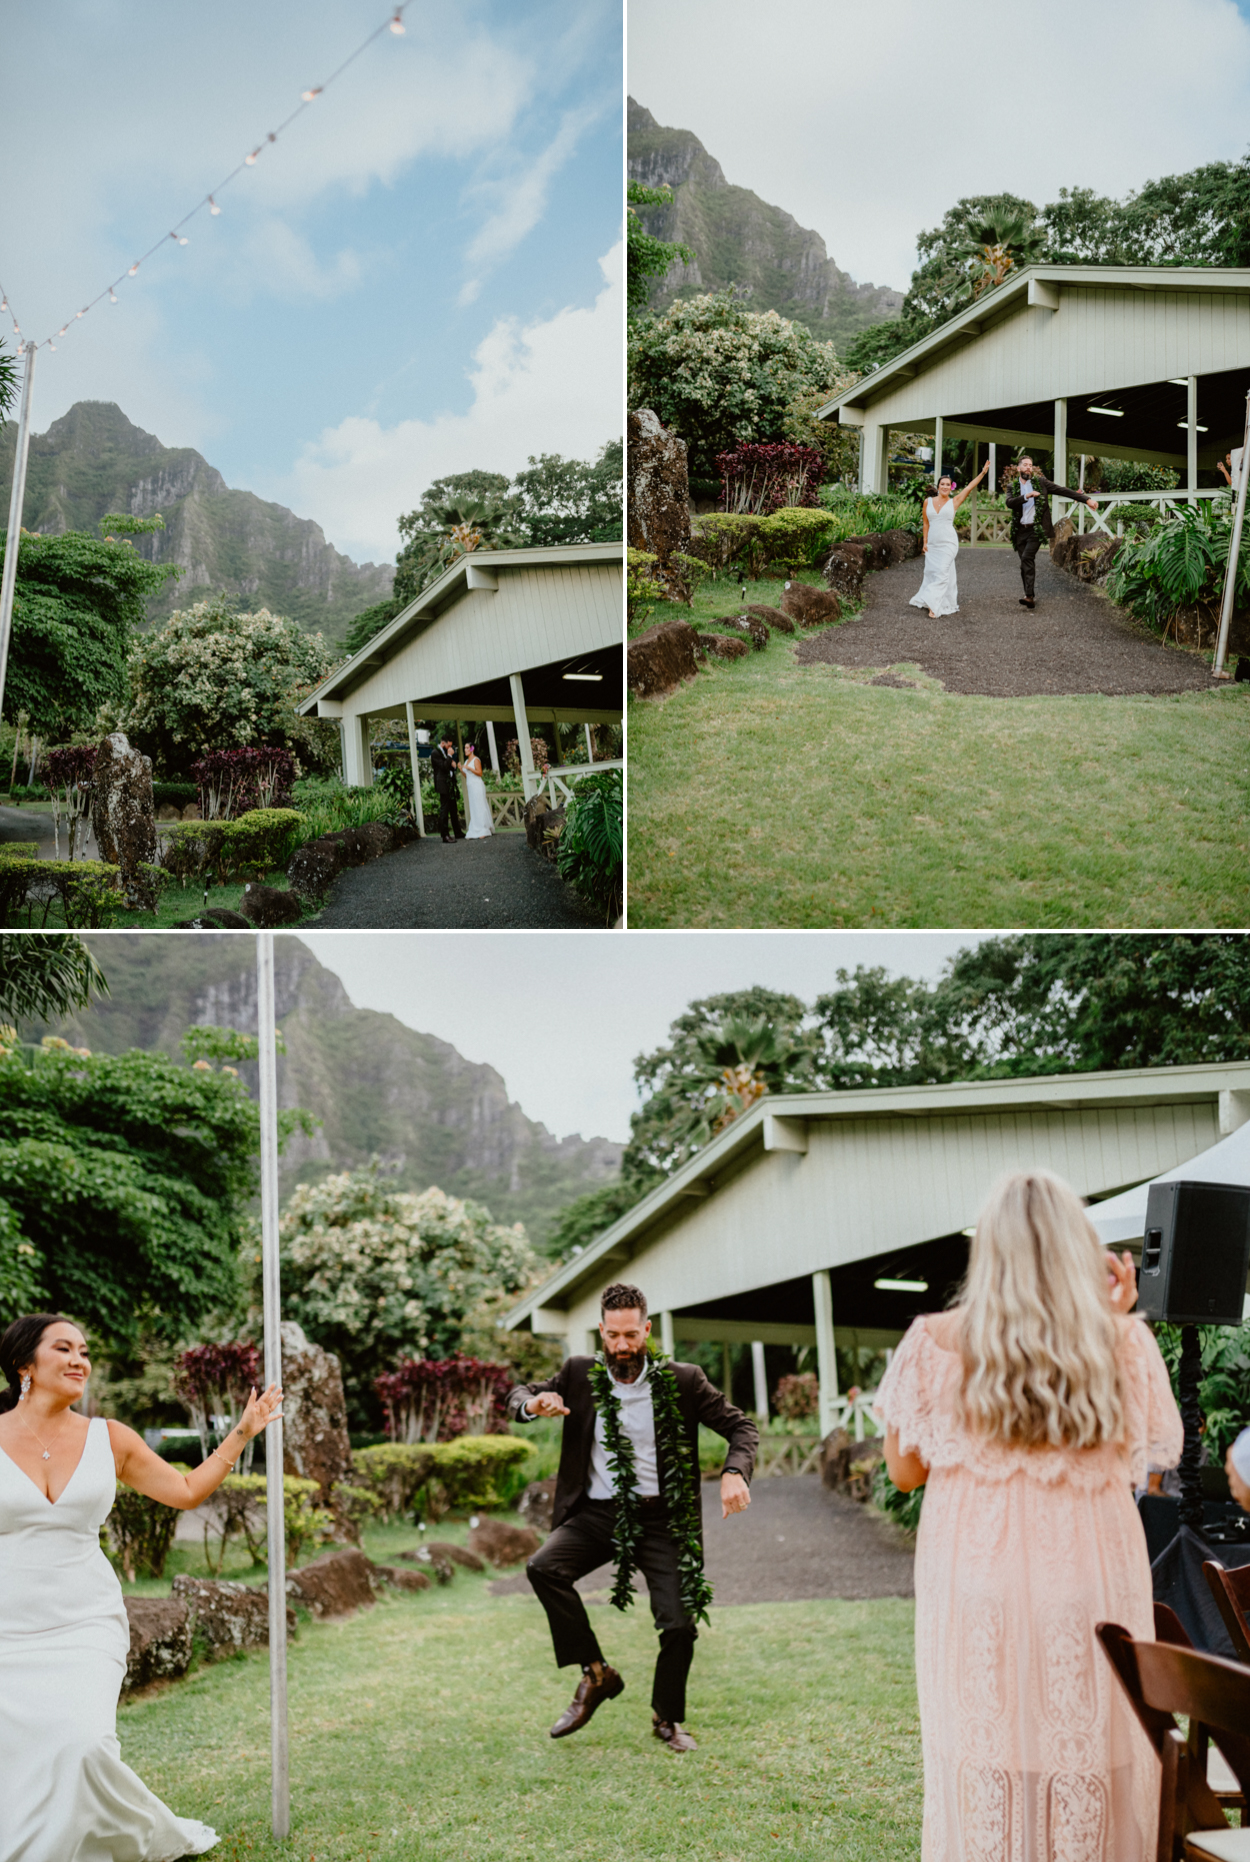 Moli'i fishpond Hawaii wedding reception groom and bride dancing
